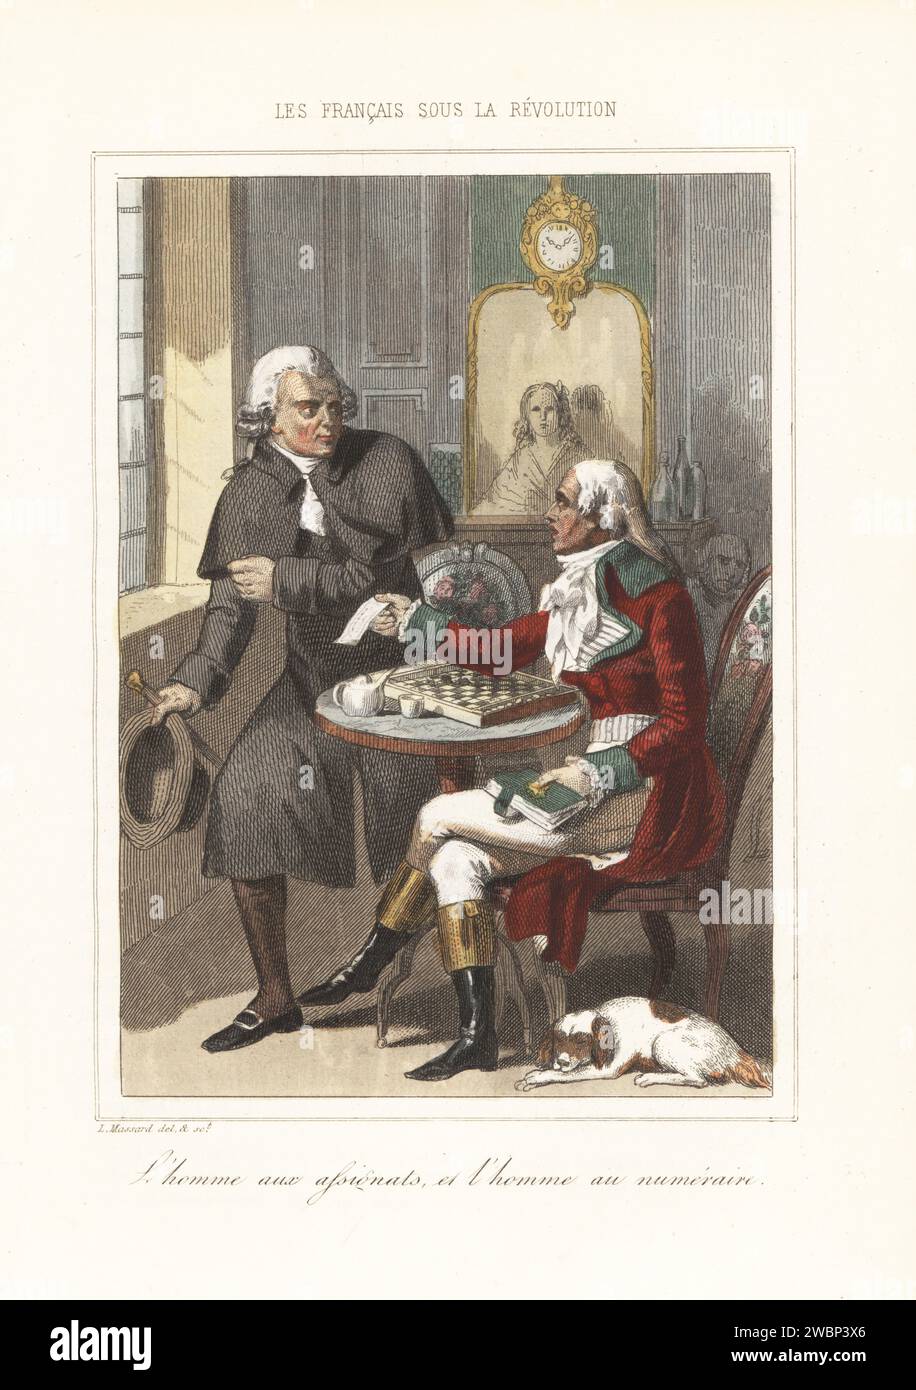 Deux messieurs jouant sur un jeu de dames (draughts) au café Procope, St. Germain-des-Prés, Paris, 1791. Le perdant essaie de payer avec un chèque (assignats), mais le gagnant demande de l'argent comptant (numéraire). L'homme aux assignats et l'homme au numéraire. Gravure sur acier colorée à la main de Leopold Massard d’après une illustration d’Henri Baron d’Augustin Challamel et Wilhelm Tenint, les Français sous la Révolution, Challamel, Paris, 1843. Banque D'Images